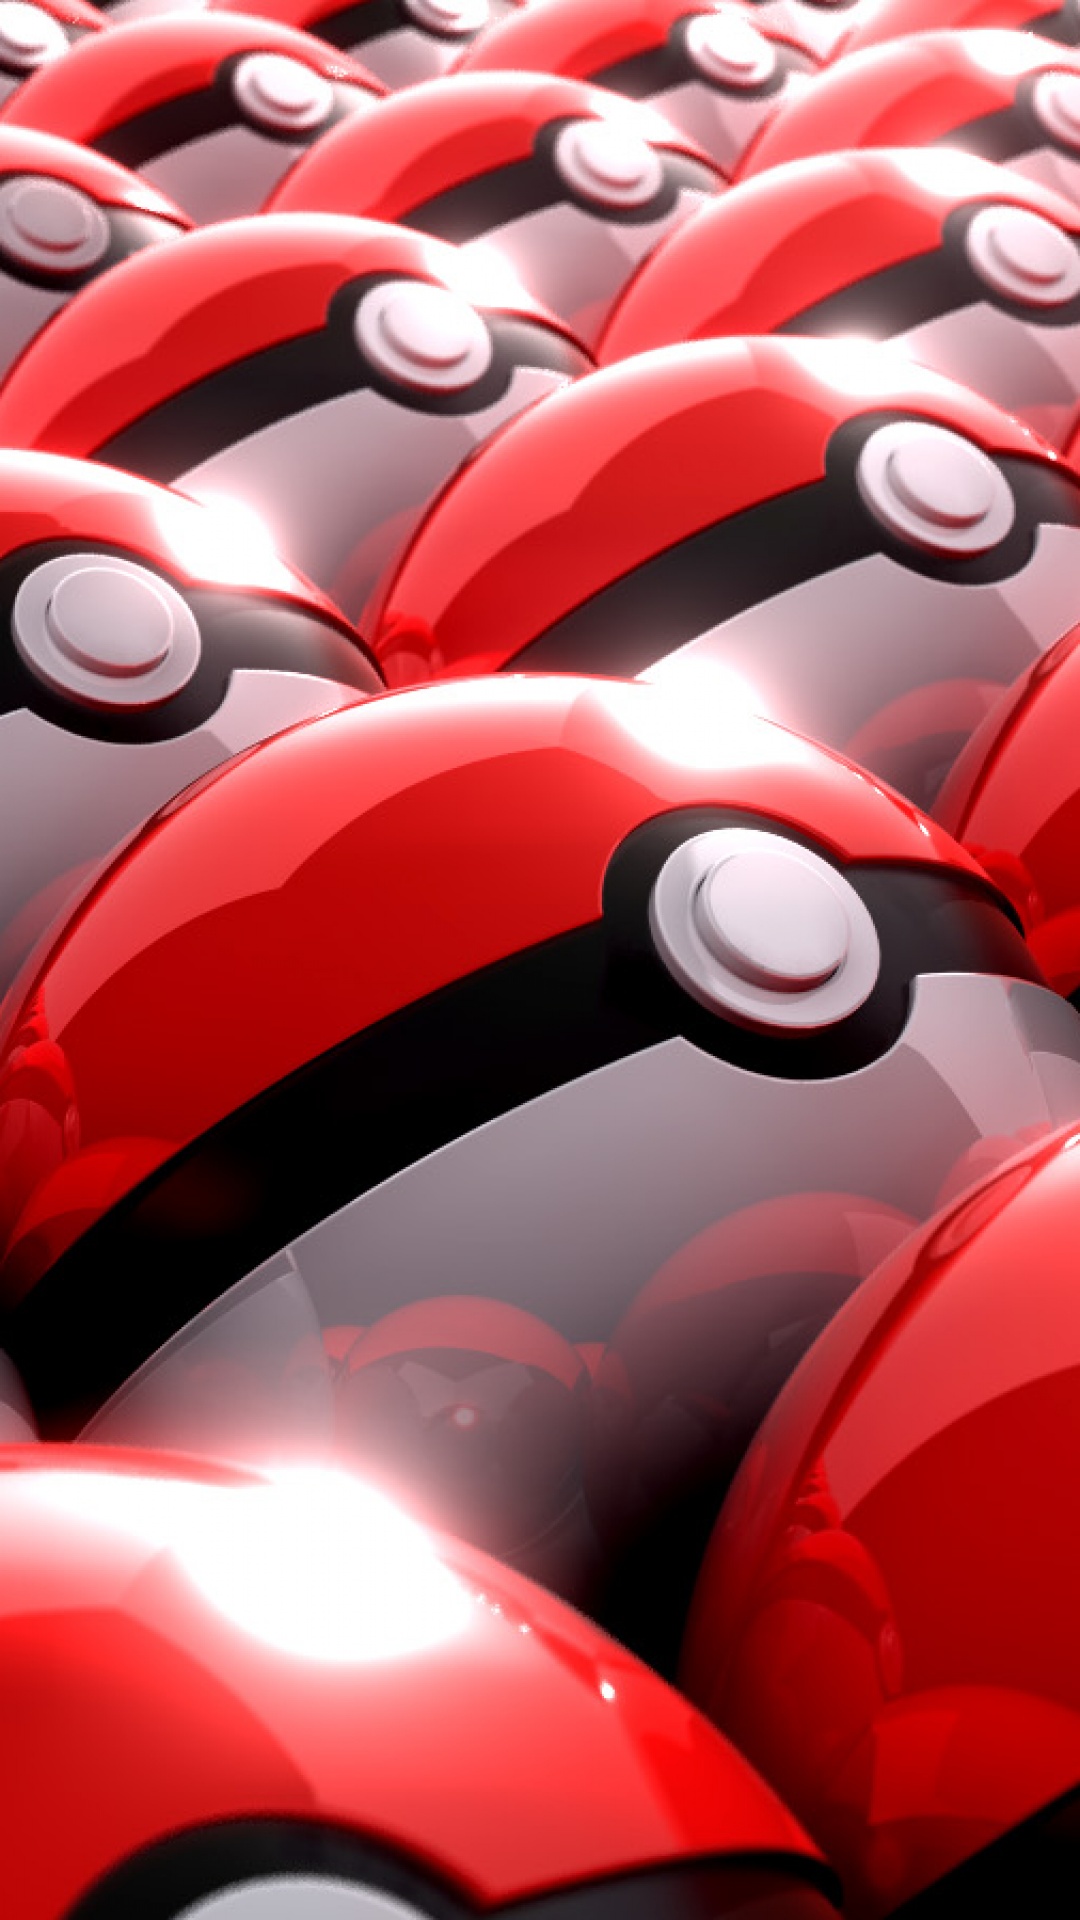 HD Pokemon Go Wallpaper For Mobile Phone